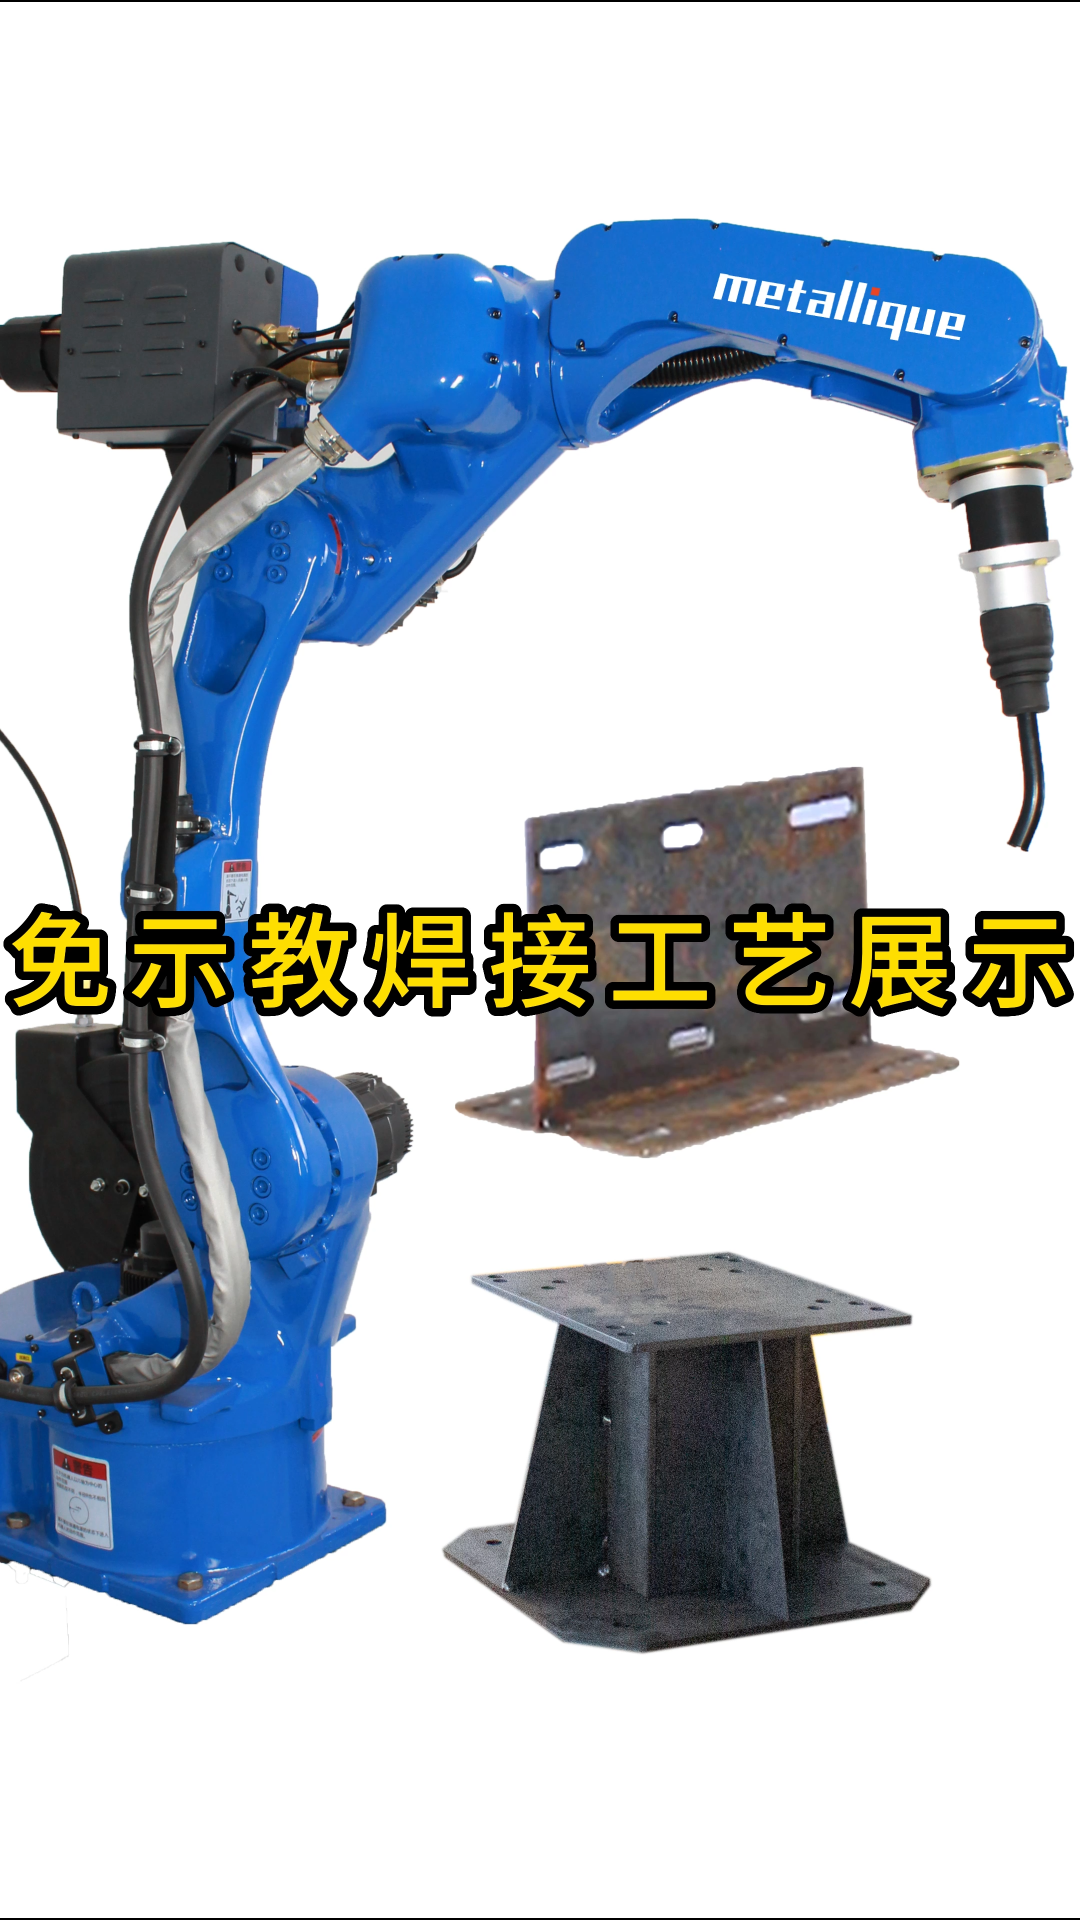 免示教焊接工艺展示# 自动化焊接设备#人工智能 